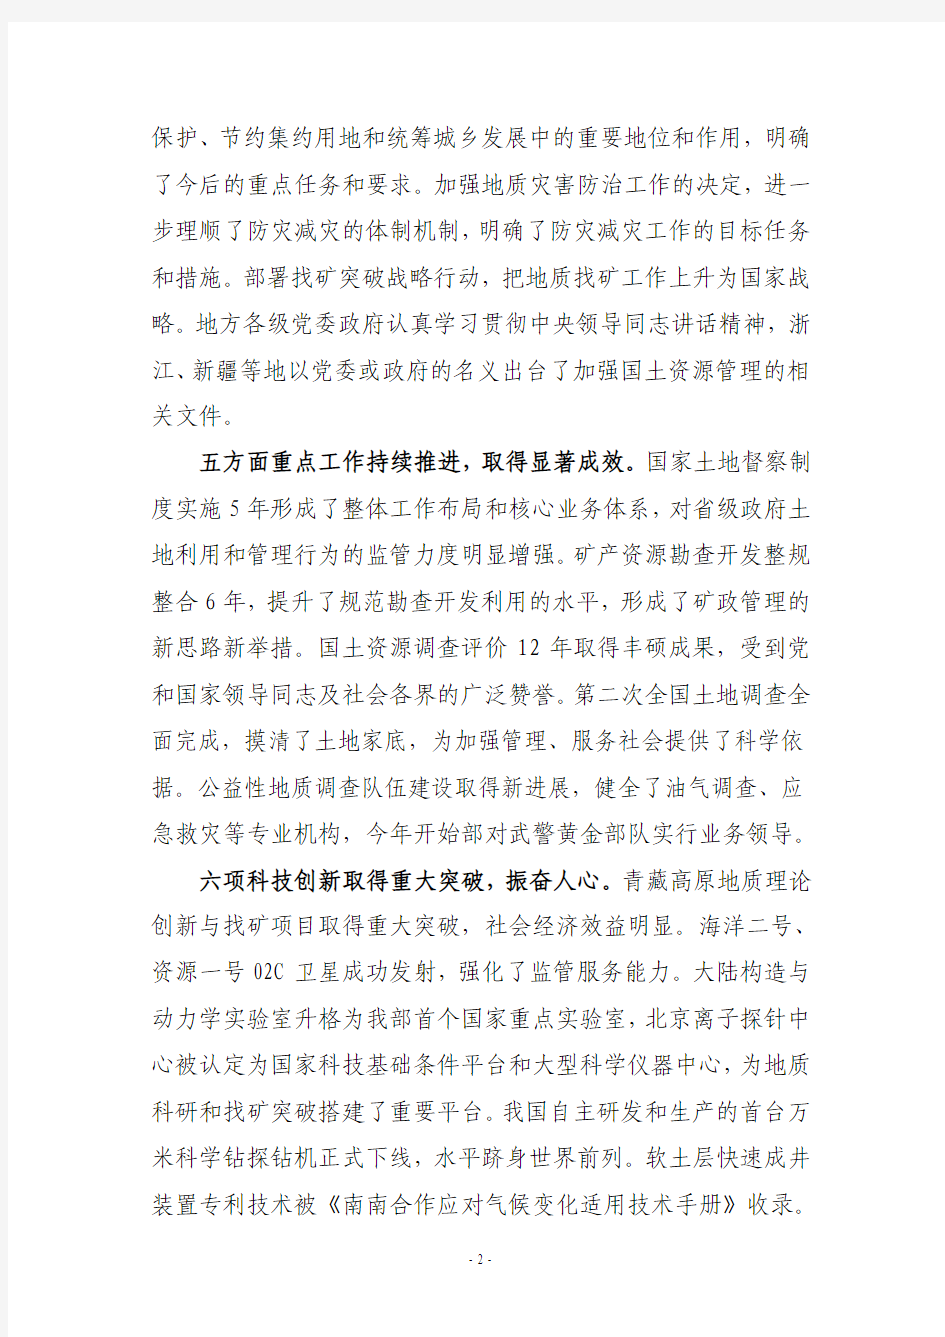 2012年1月7日 徐绍史同志在2012年全国国土资源工作会议上的讲话